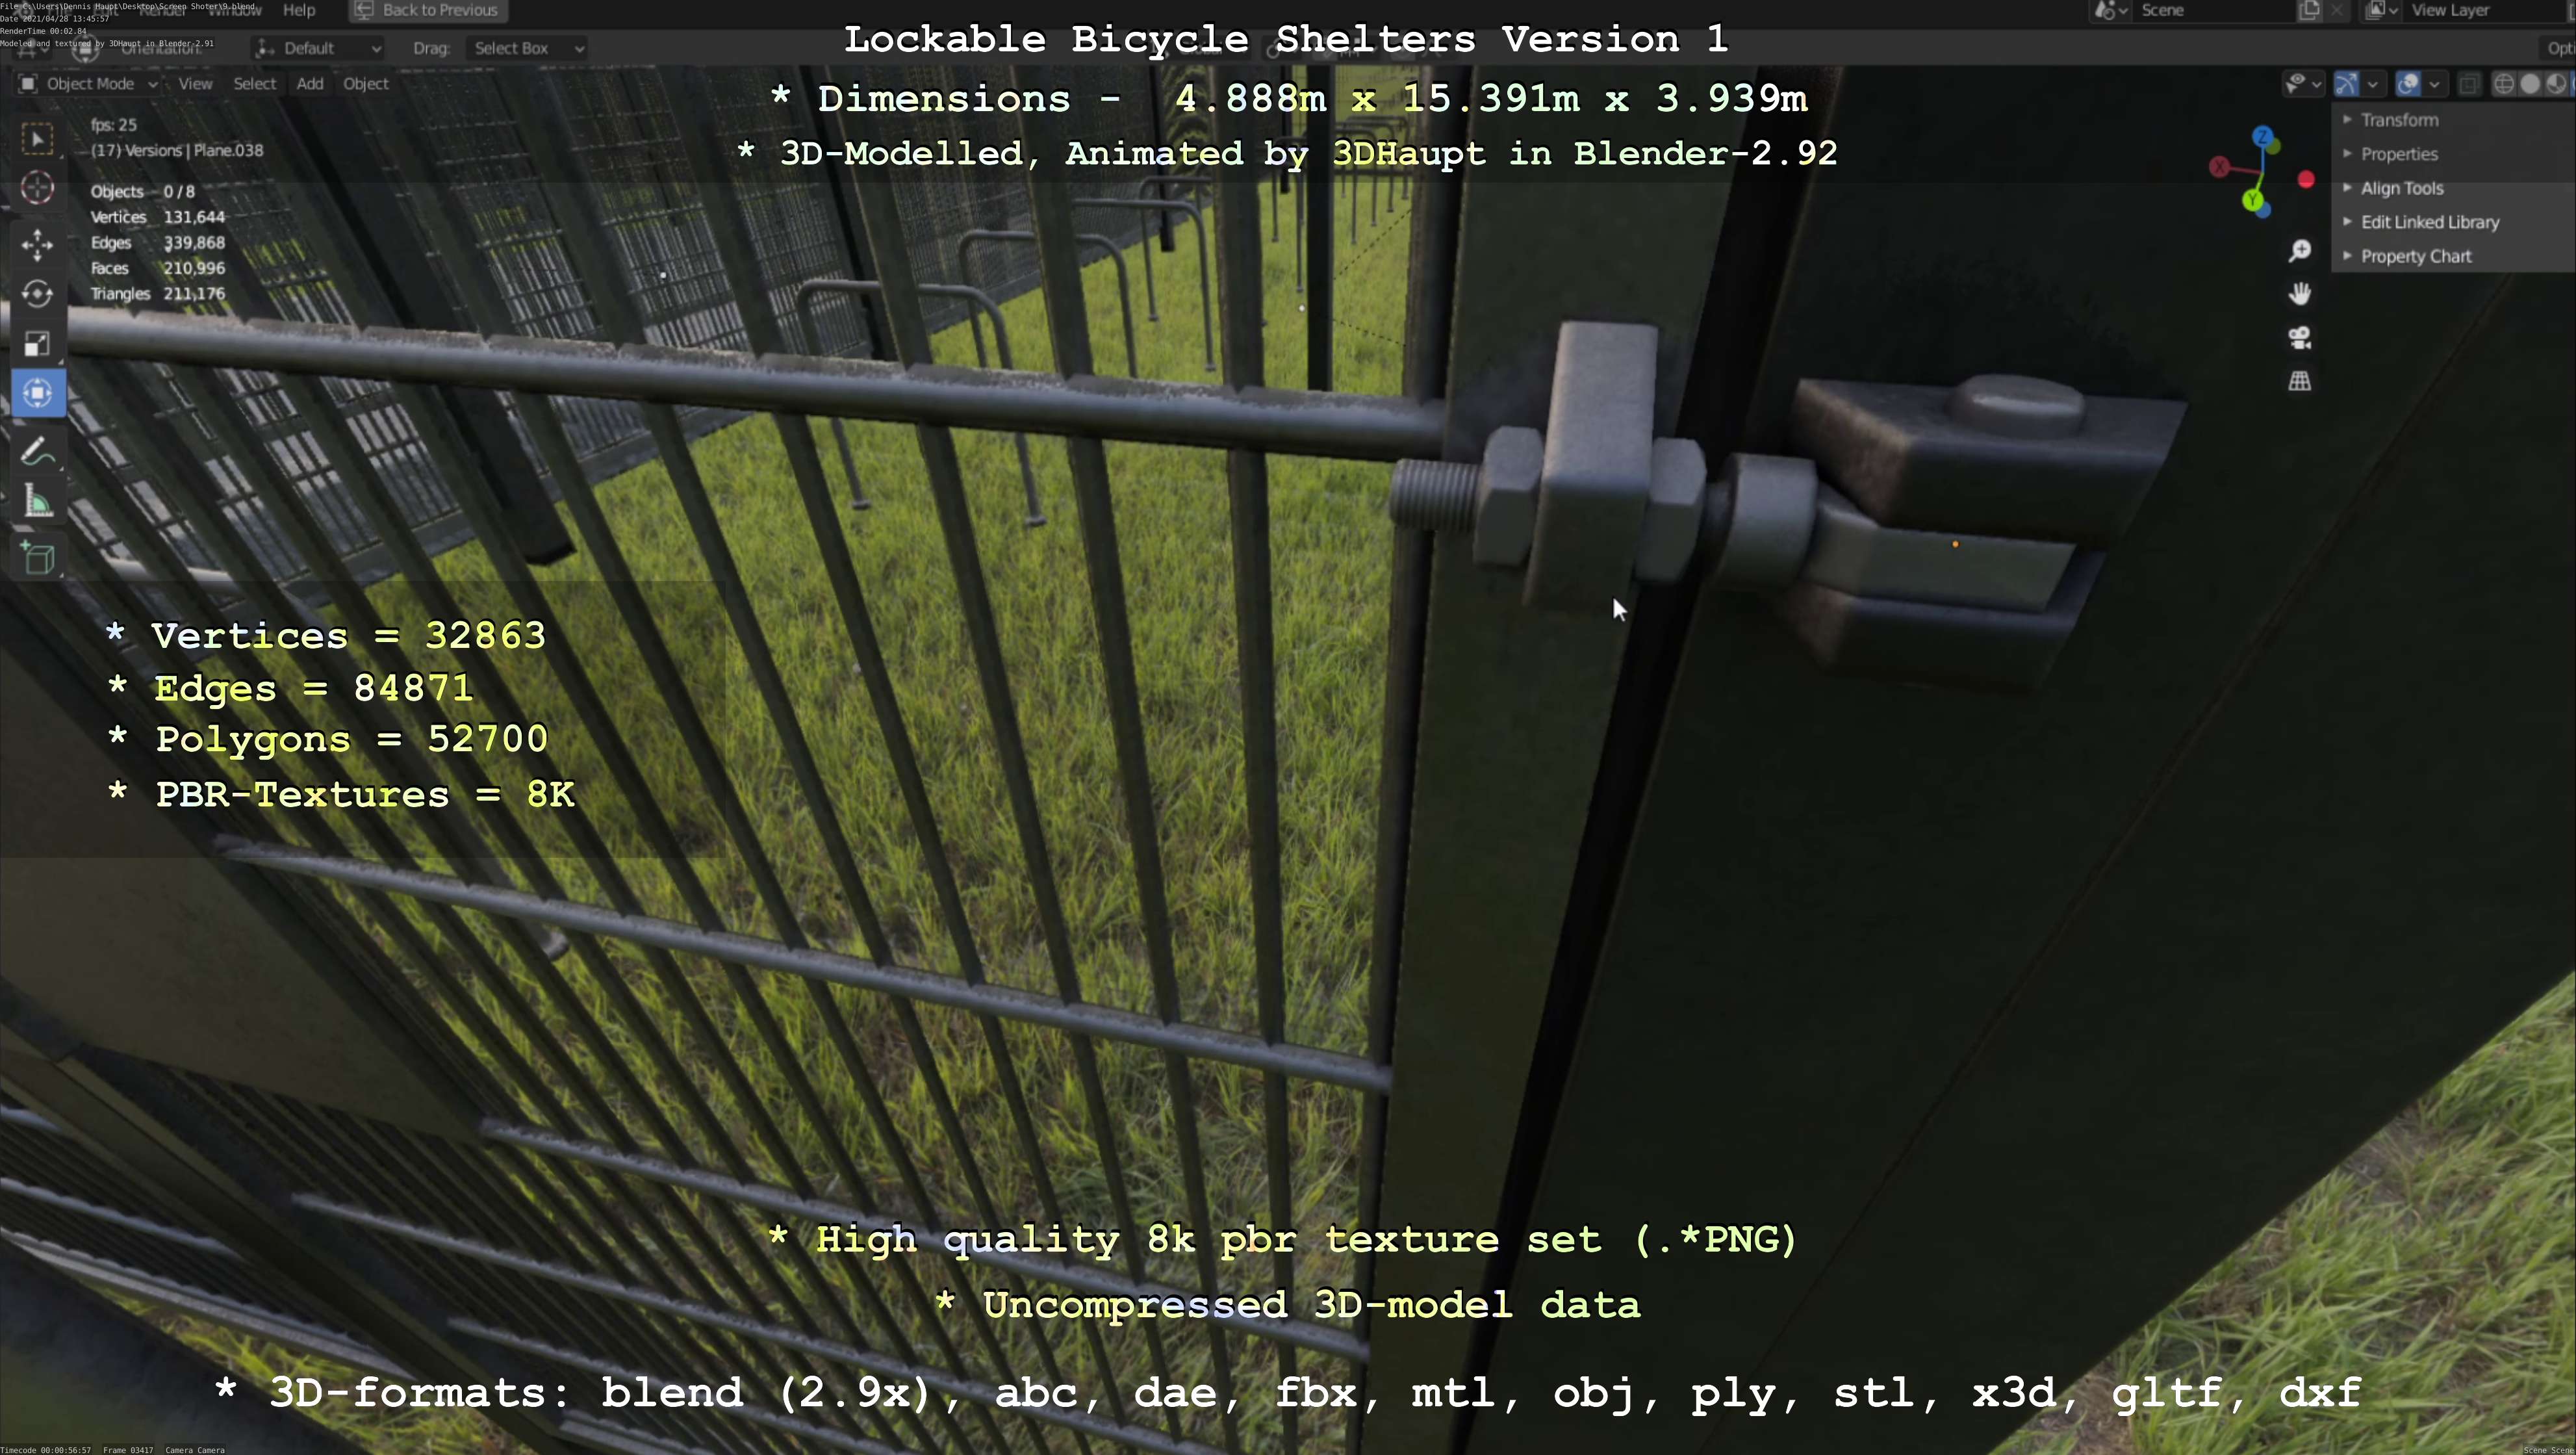 Lockable Bicycle Shelters Version 1 (Blender-2.92 Eevee)